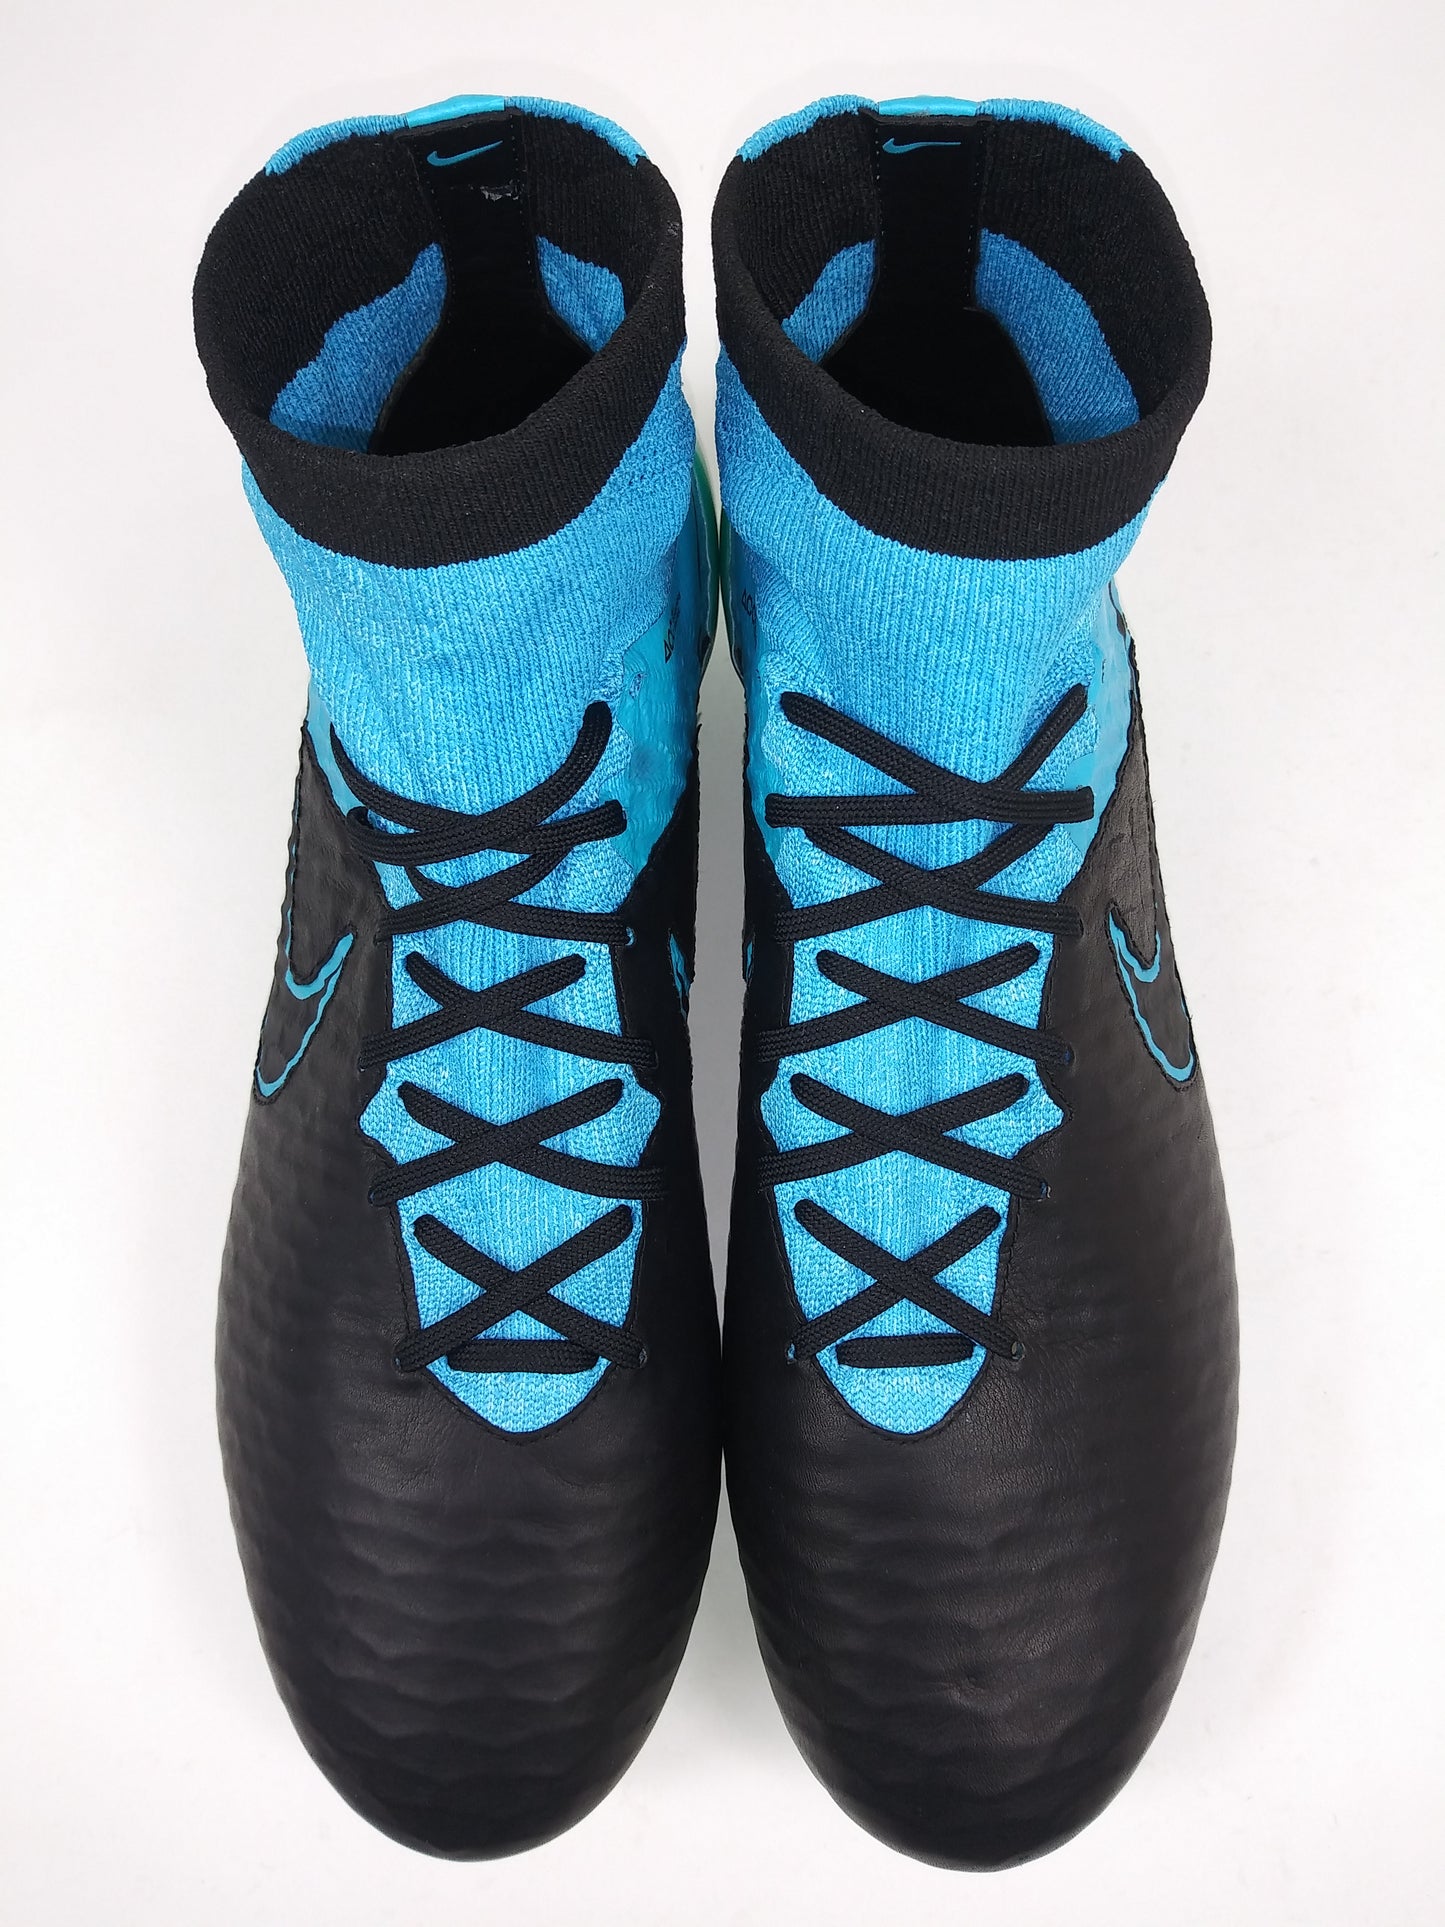 Nike Magista OBRA FG TC Leather Black Blue